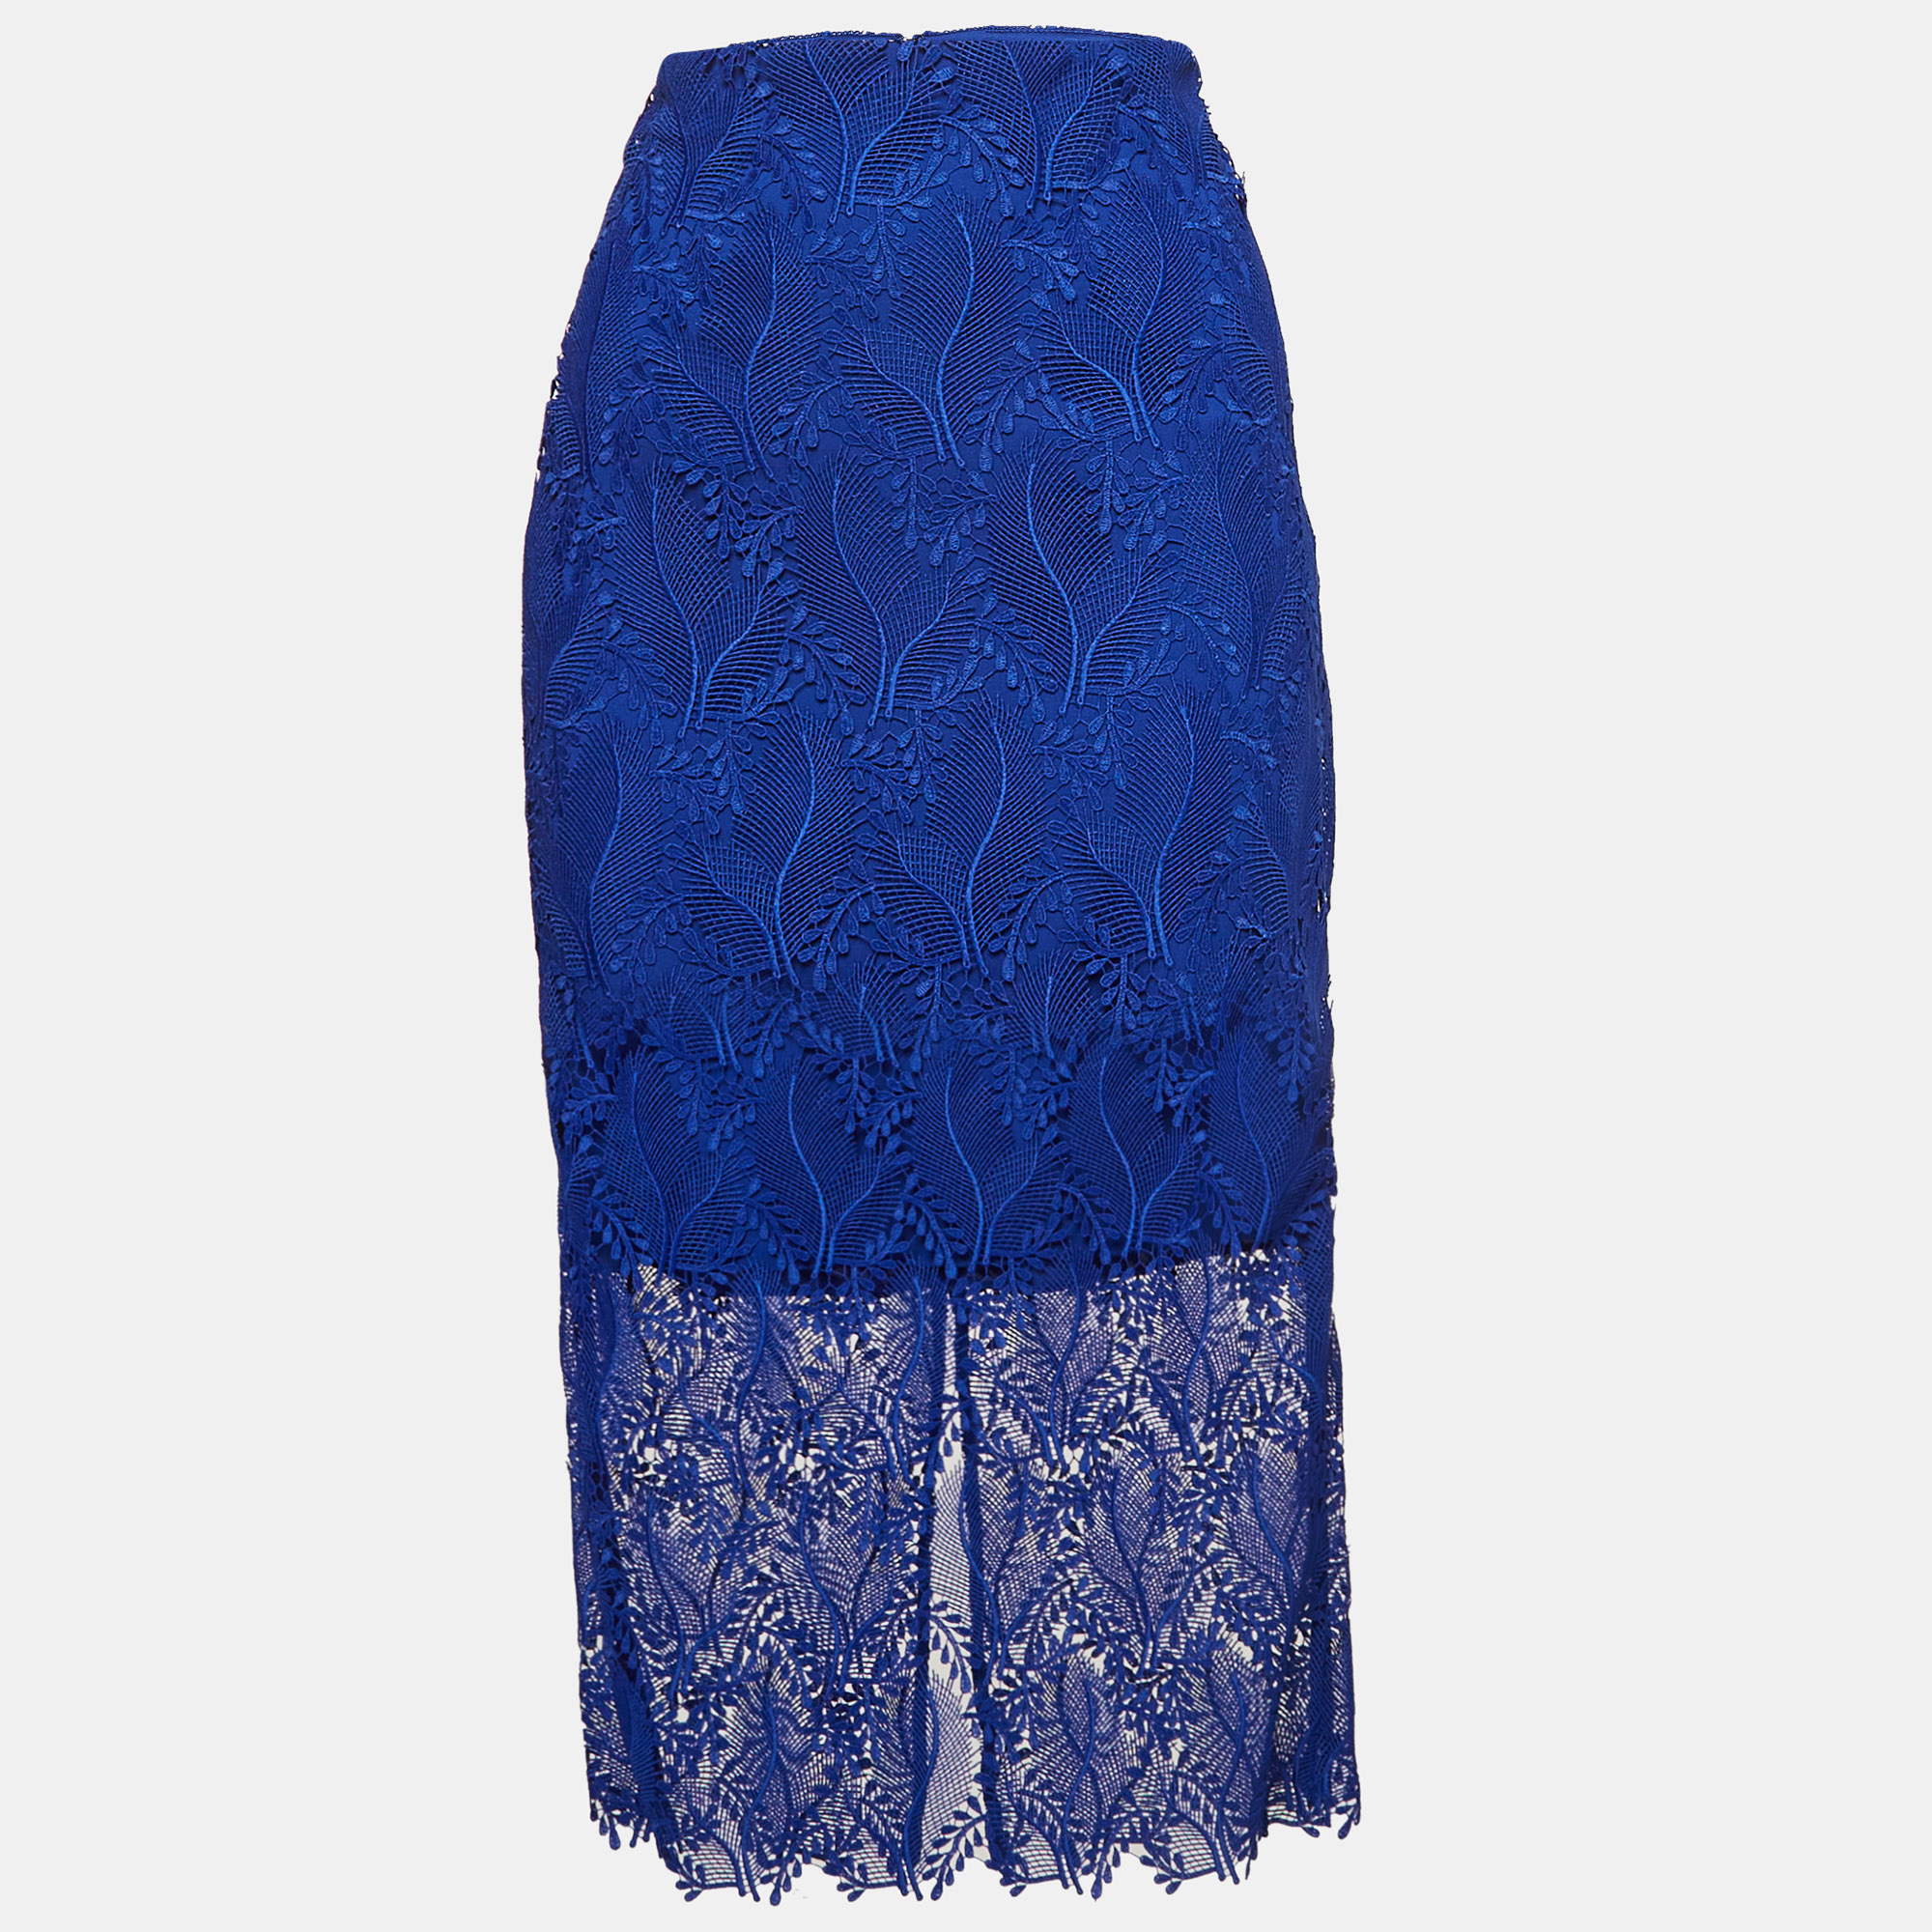 Diane von furstenberg blue lace overlay tailored pencil skirt s